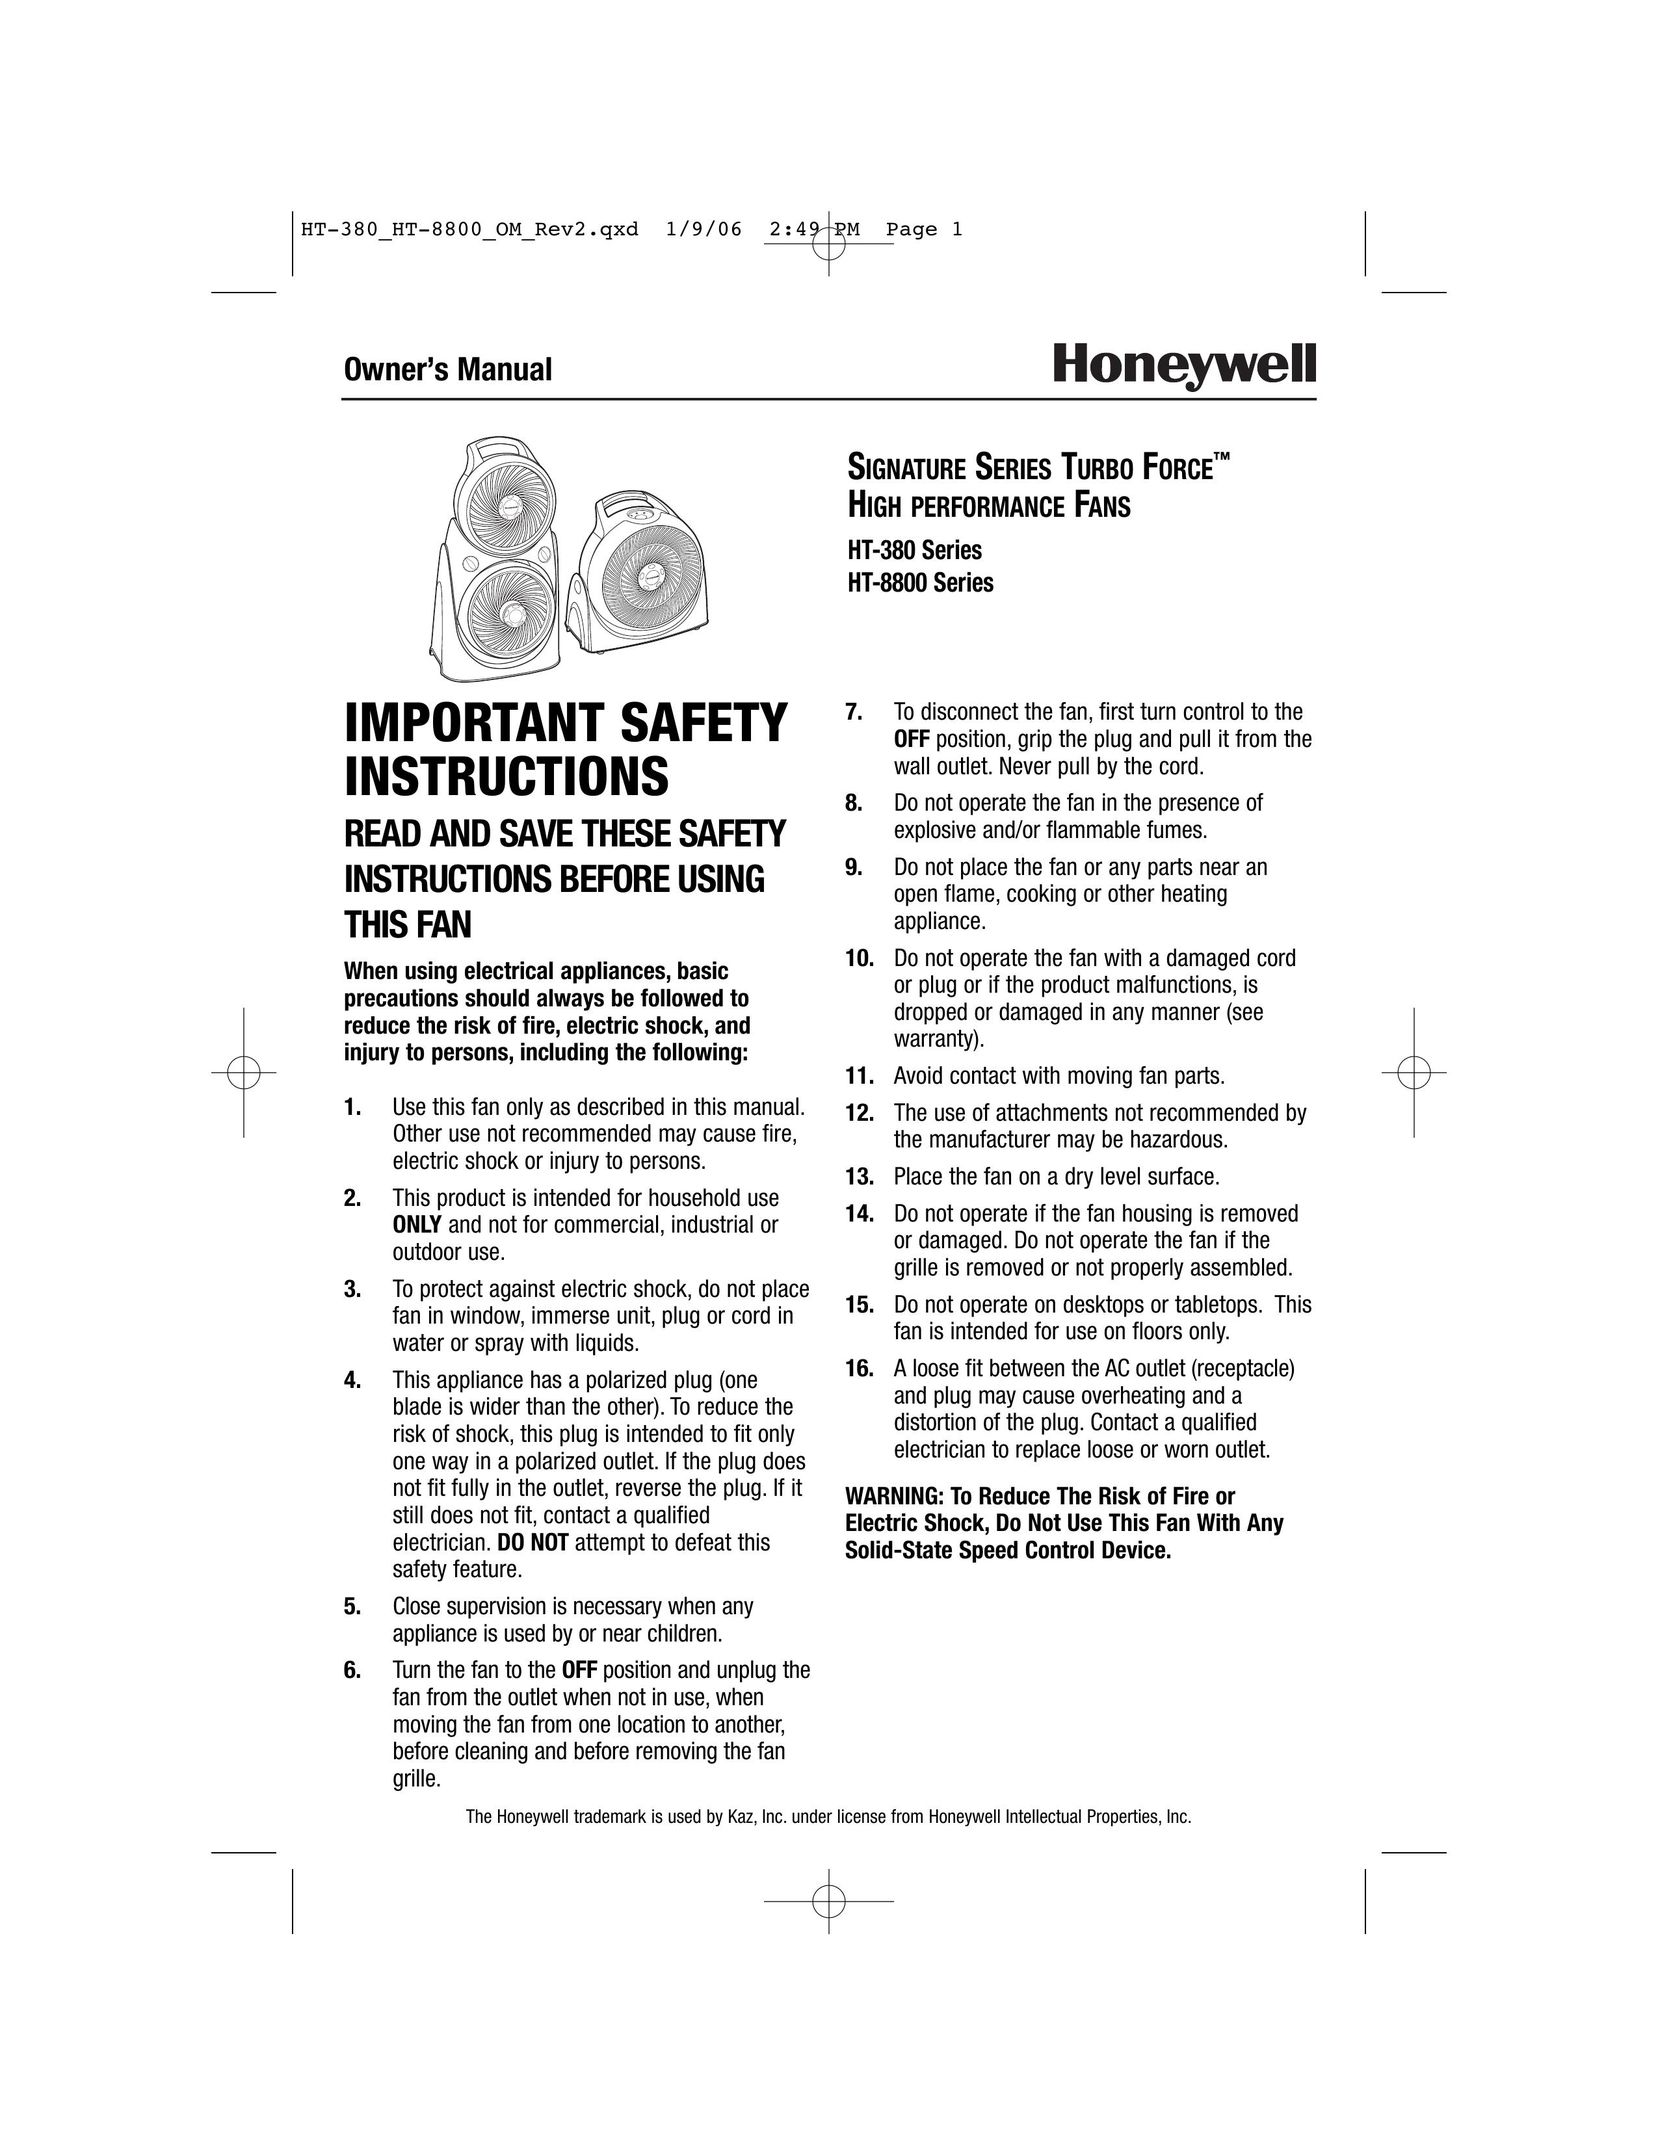 Honeywell HT-8800 Series Fan User Manual